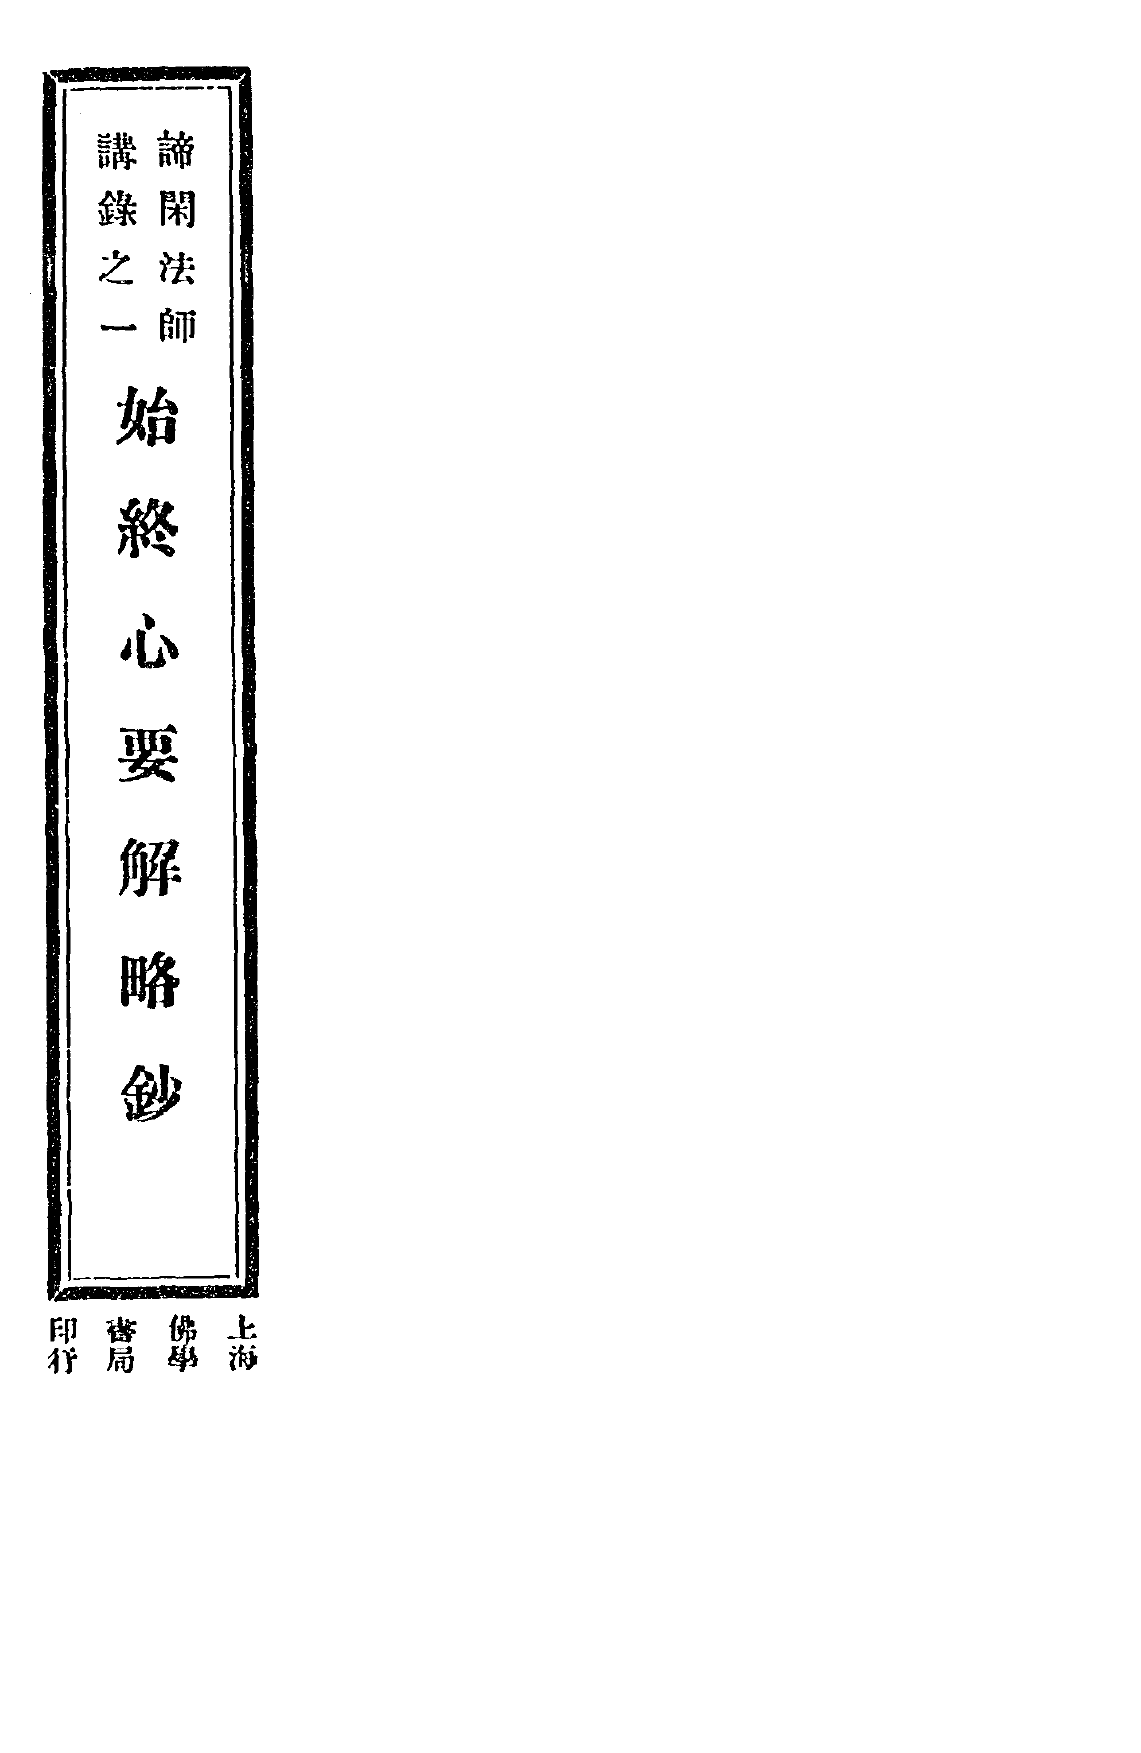 Shizhong xin yaojie luechao 1933.png